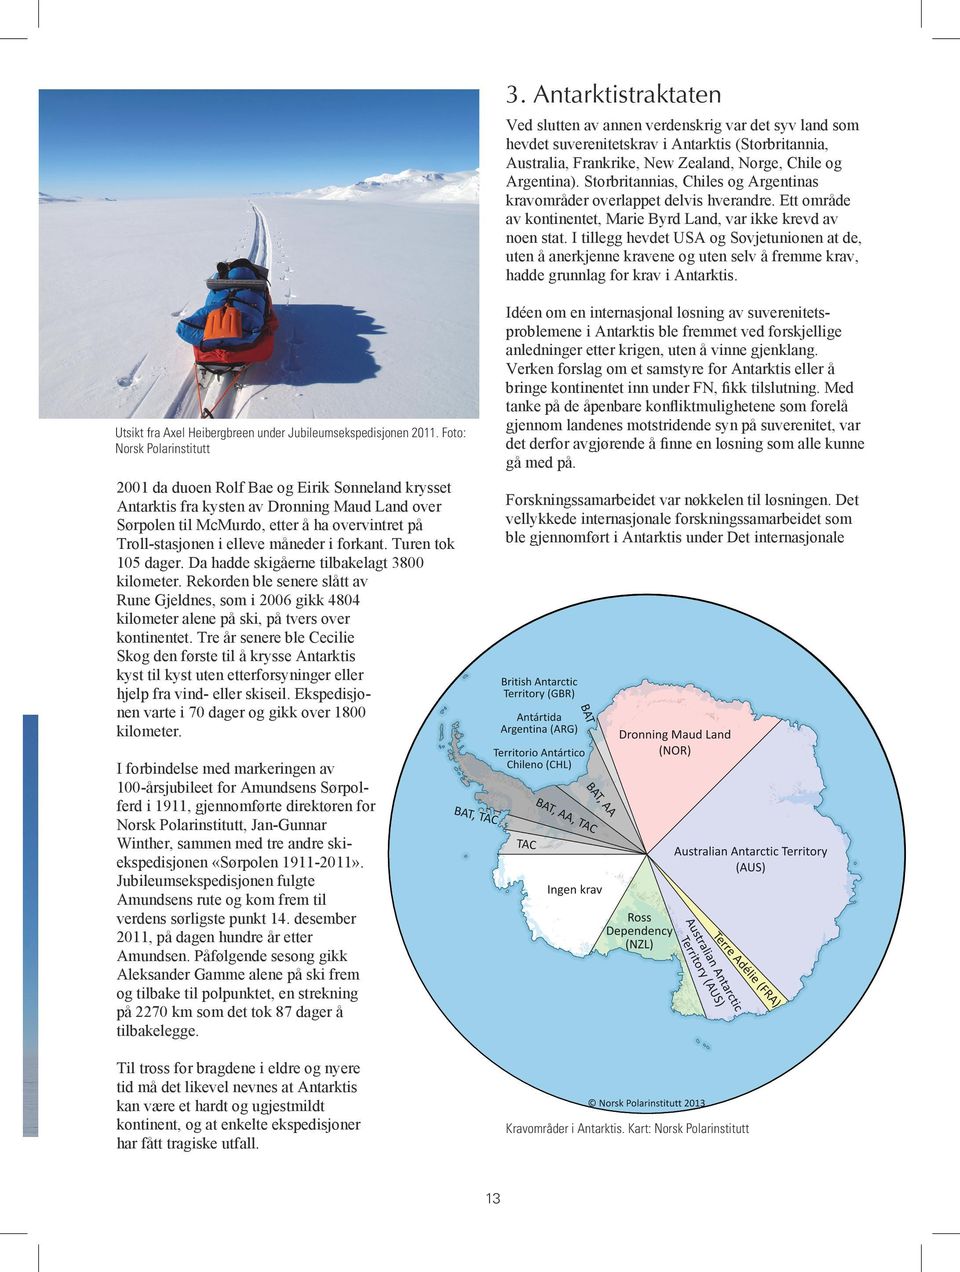 I tillegg hevdet USA og Sovjetunionen at de, uten å anerkjenne kravene og uten selv å fremme krav, hadde grunnlag for krav i Antarktis. Utsikt fra Axel Heibergbreen under Jubileumsekspedisjonen 2011.